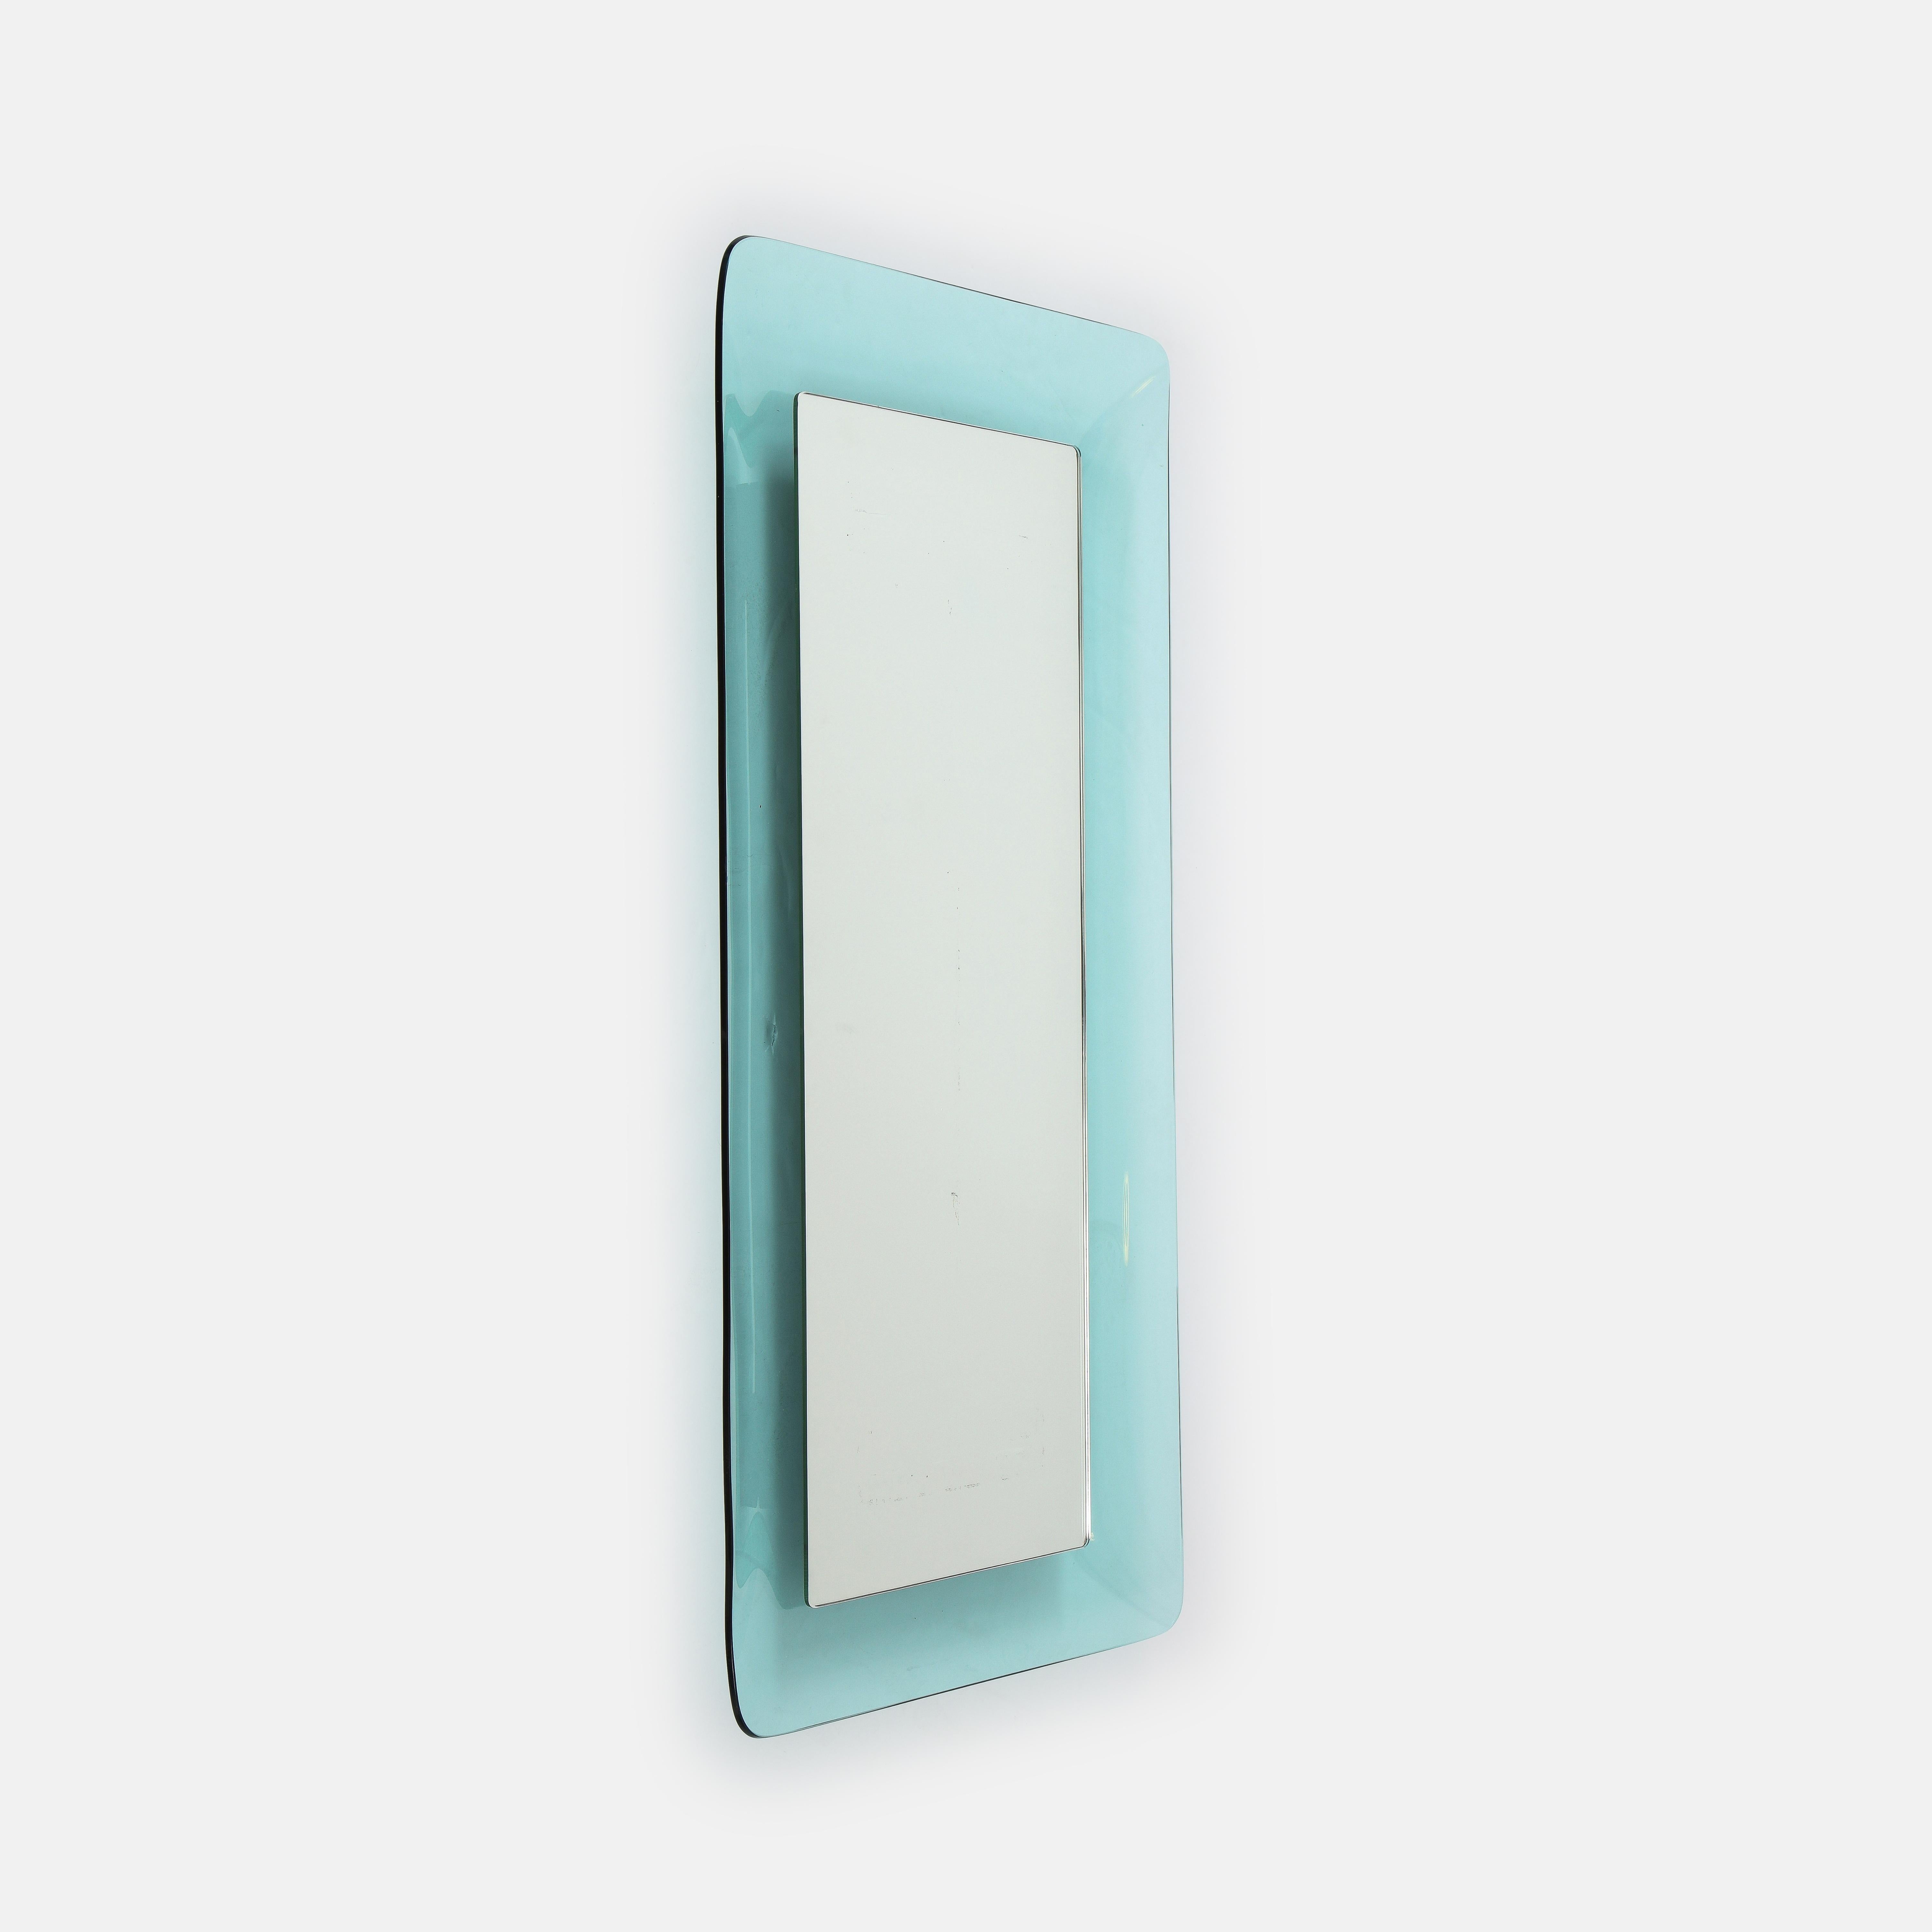 Grand miroir rectangulaire modèle 2273 de Max Ingrand pour Fontana Arte, en verre de cristal courbé et profilé de couleur bleu clair encadrant le verre miroir, Italie, vers 1956. Cet élégant miroir aux courbes subtiles et à la forme simple est une